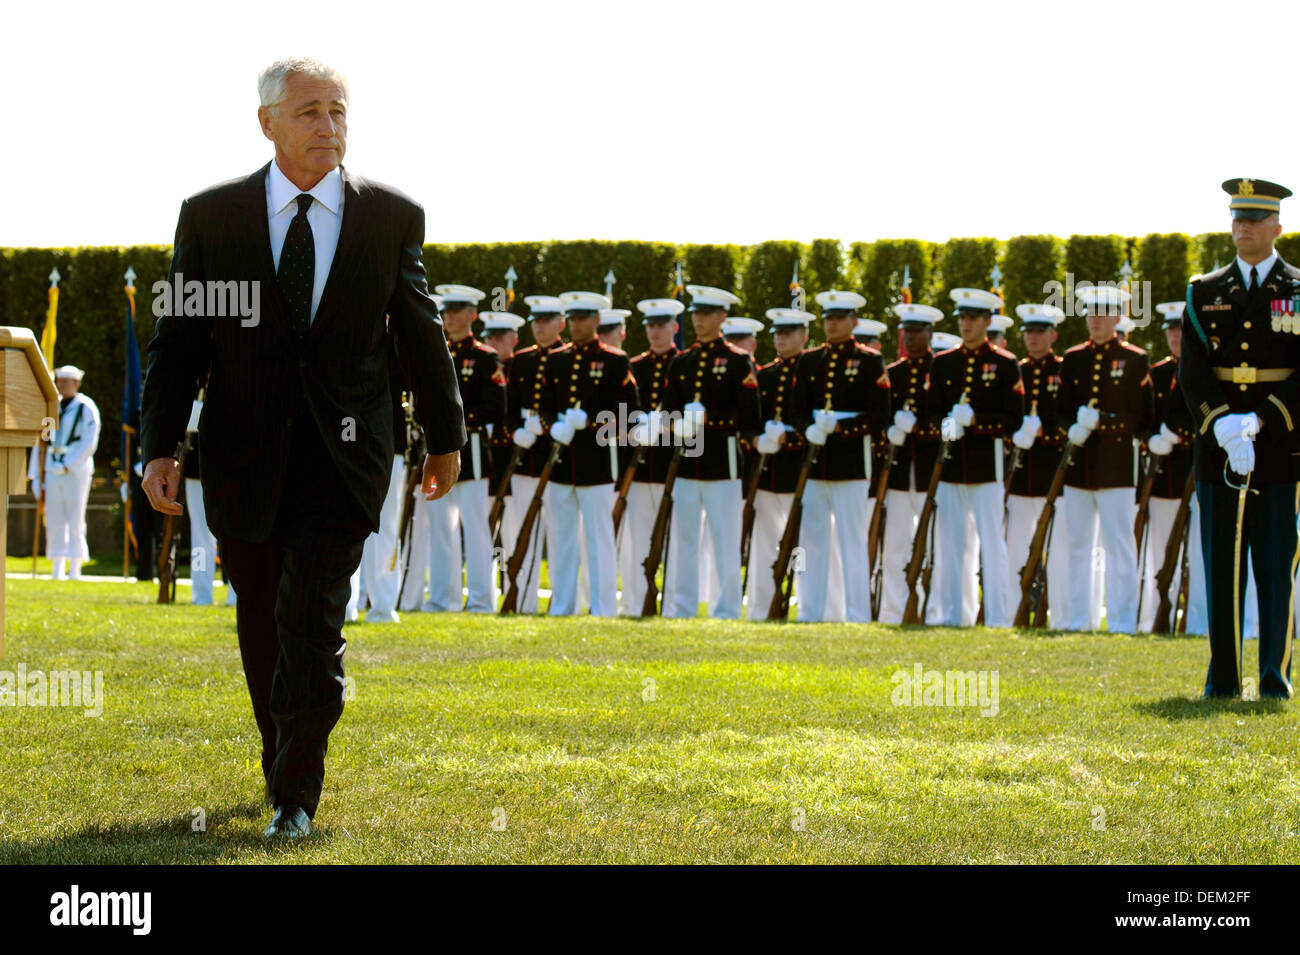 Le secrétaire américain à la défense Chuck Hagel marche à travers le champ de parade lors d'une cérémonie à retenir les prisonniers de guerre et les militaires portés disparus au Pentagone le 20 septembre 2013 à Arlington, VA. Banque D'Images